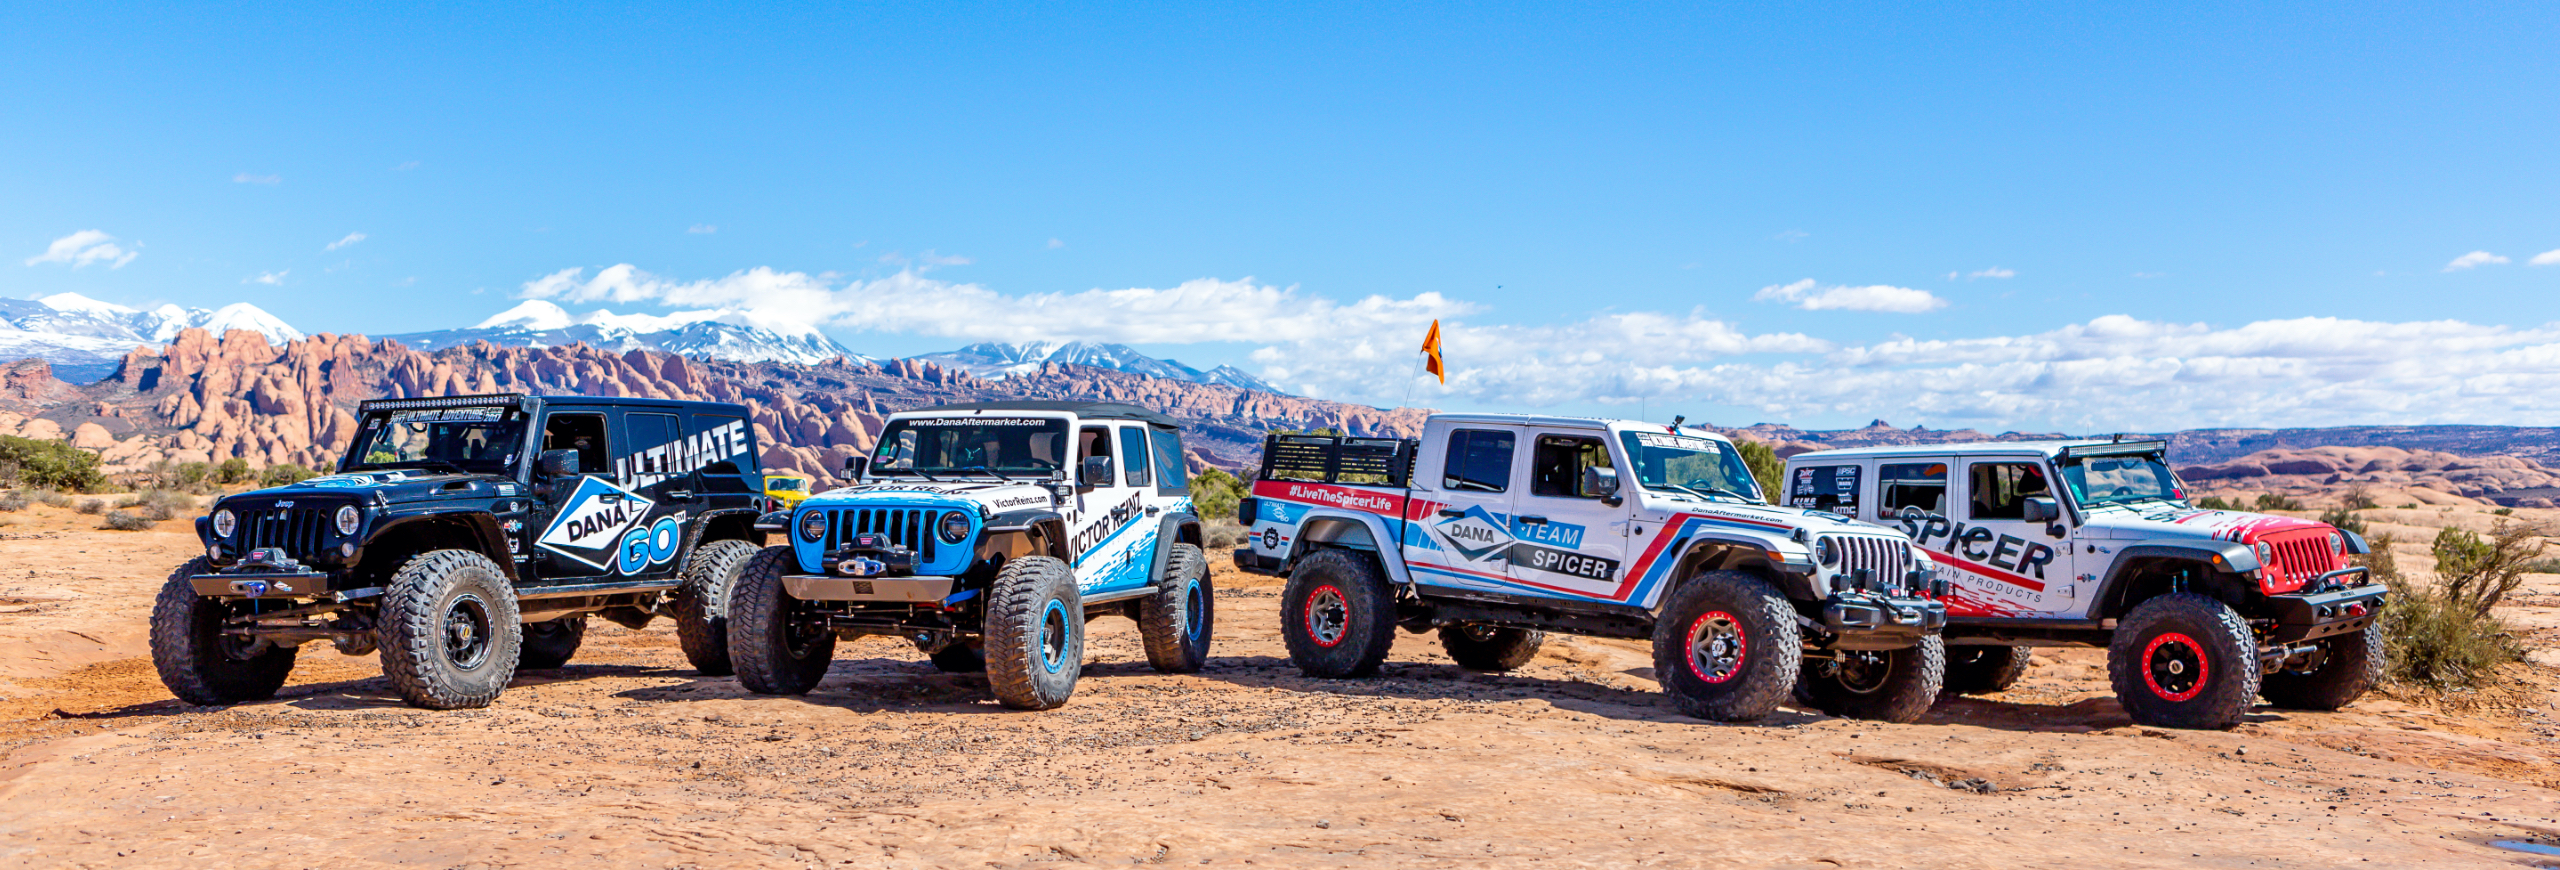 Dana Aftermarket Jeeps in Moab